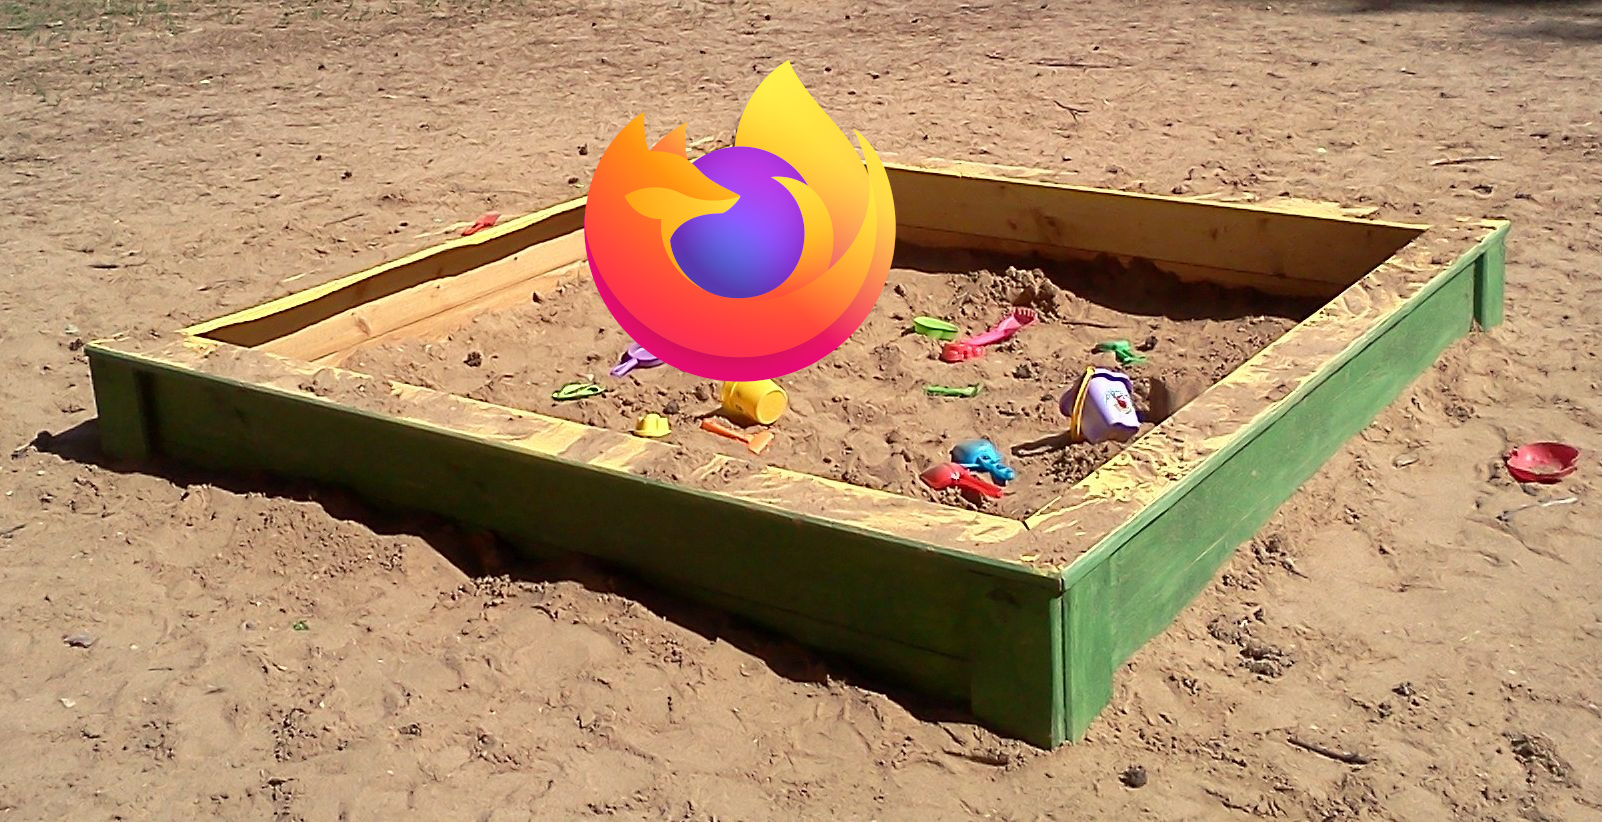 Elkerített környezet, ahol a Firefox bátran játszhat a kártékony weboldalakkal. (Eredeti kép: Wikipedia)